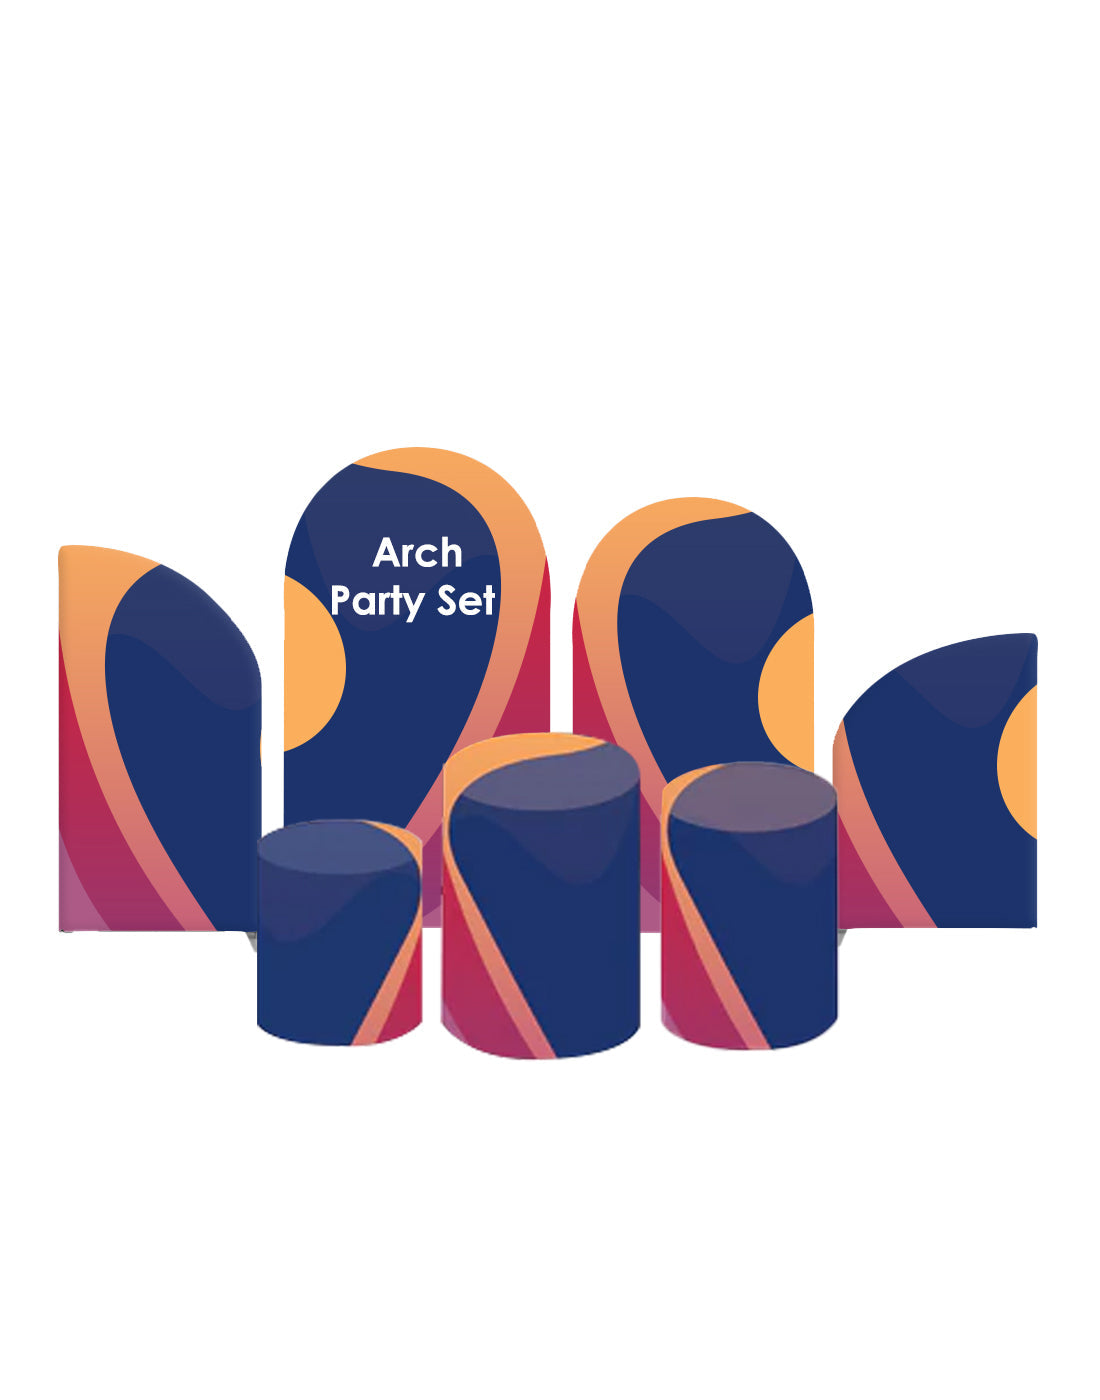 Arch Party Sets - 4 murs avec socle